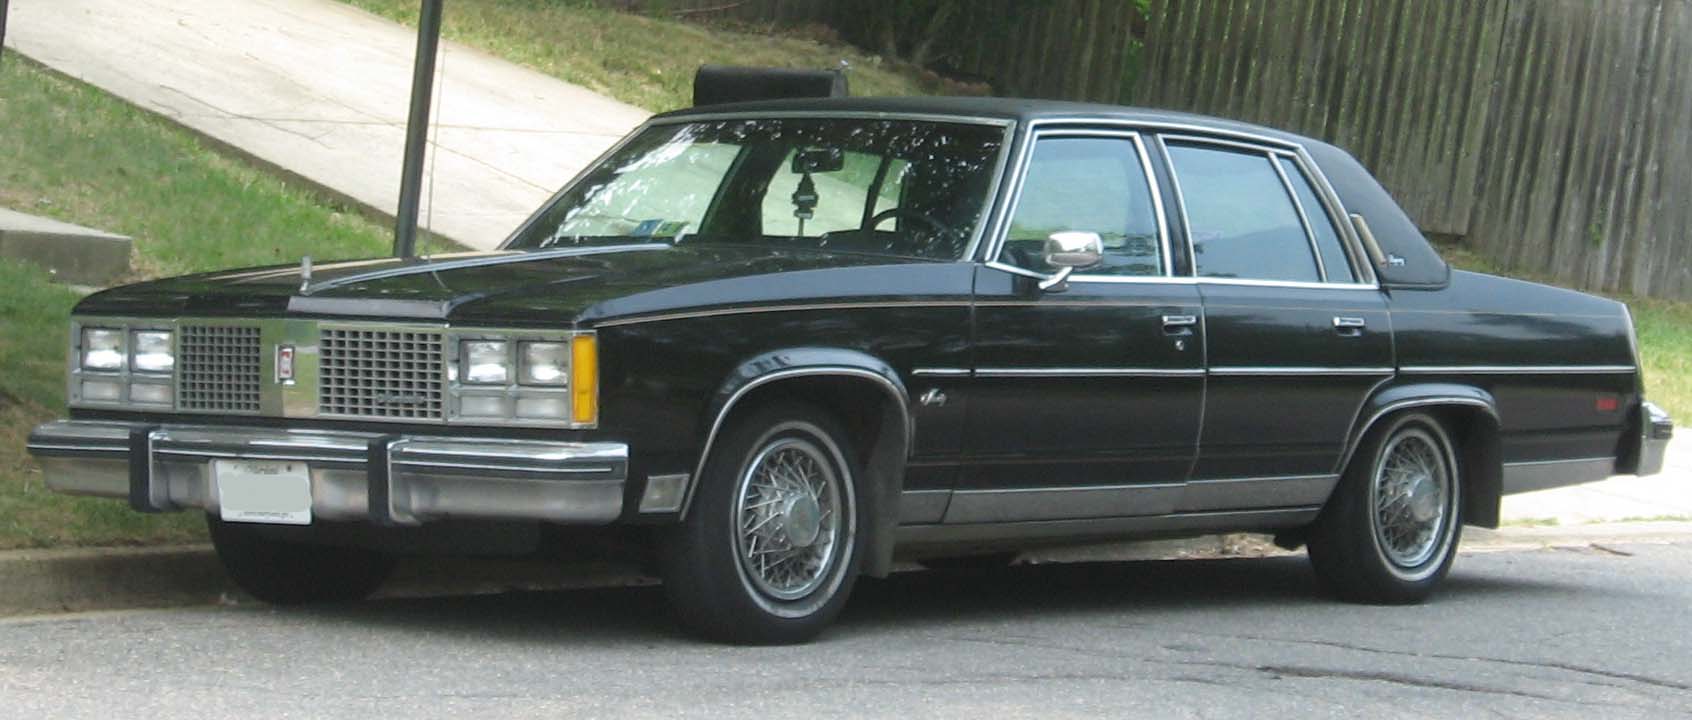 File:1978 Oldsmobile 98 Regency sedan.jpg - Wikipedia